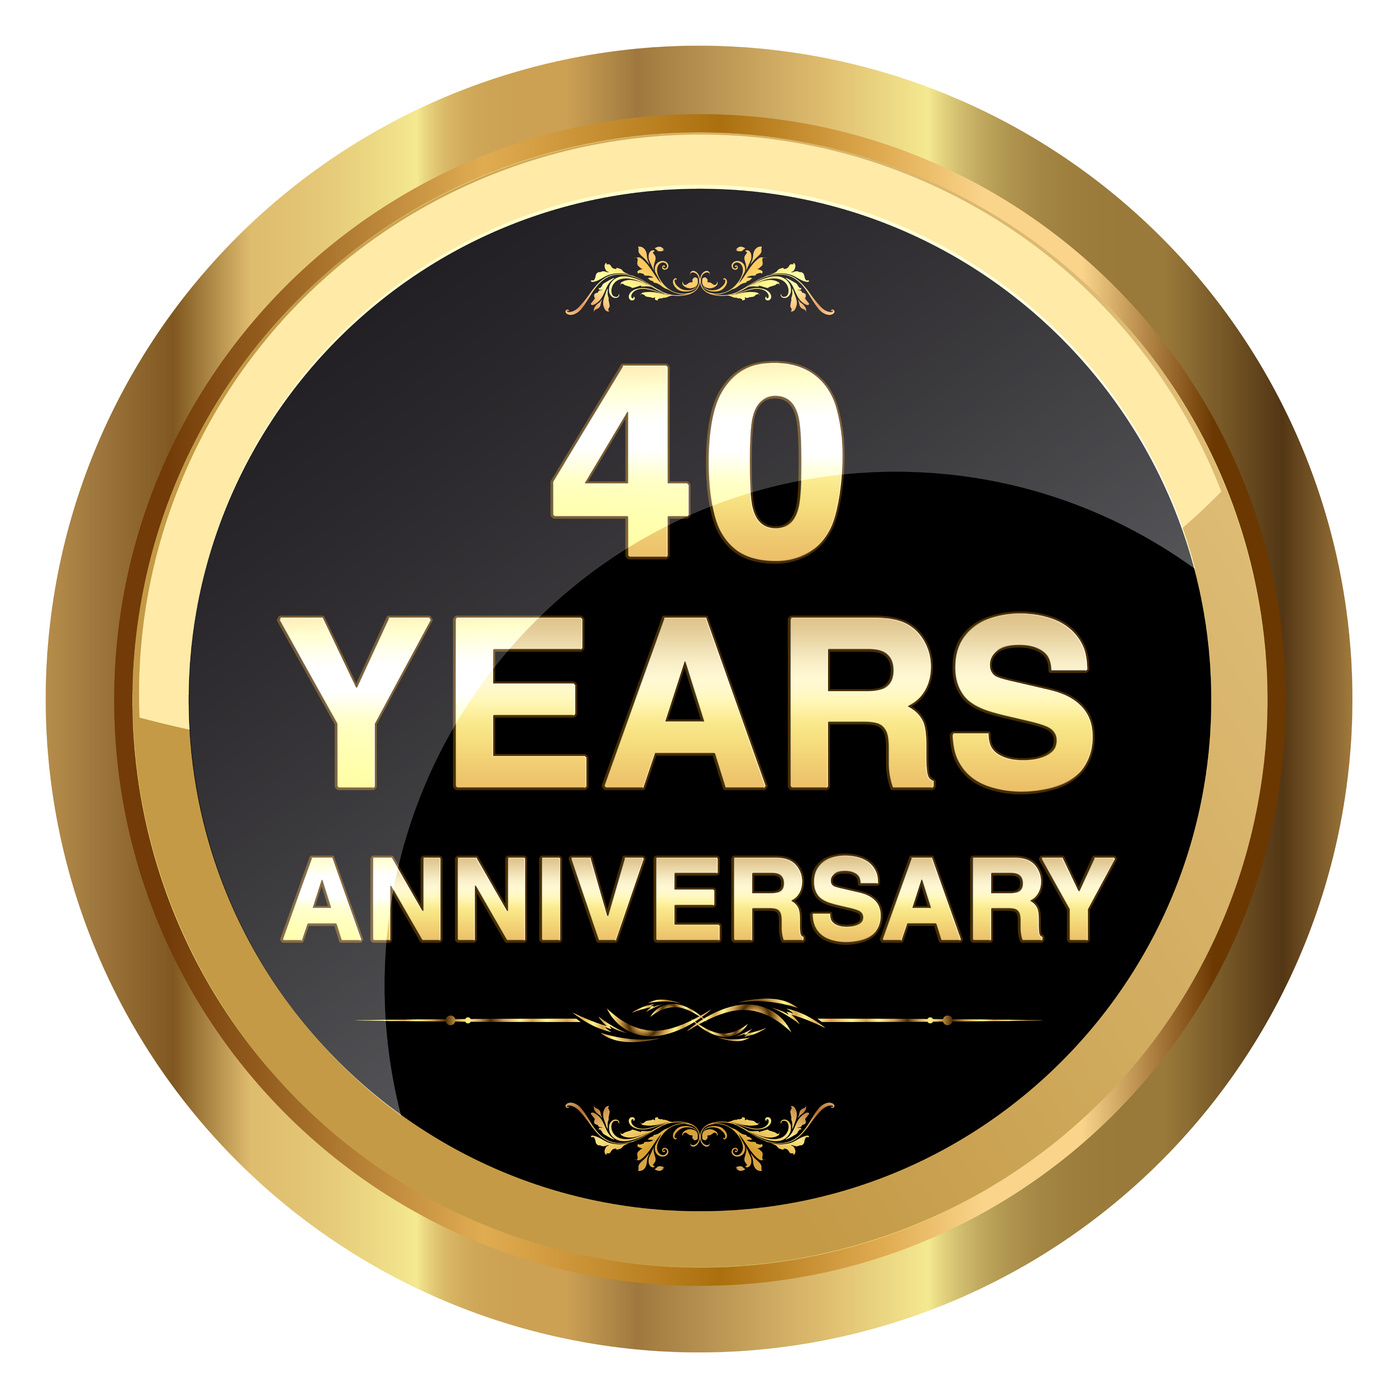 40 years anniversary gold badge - Stock Image